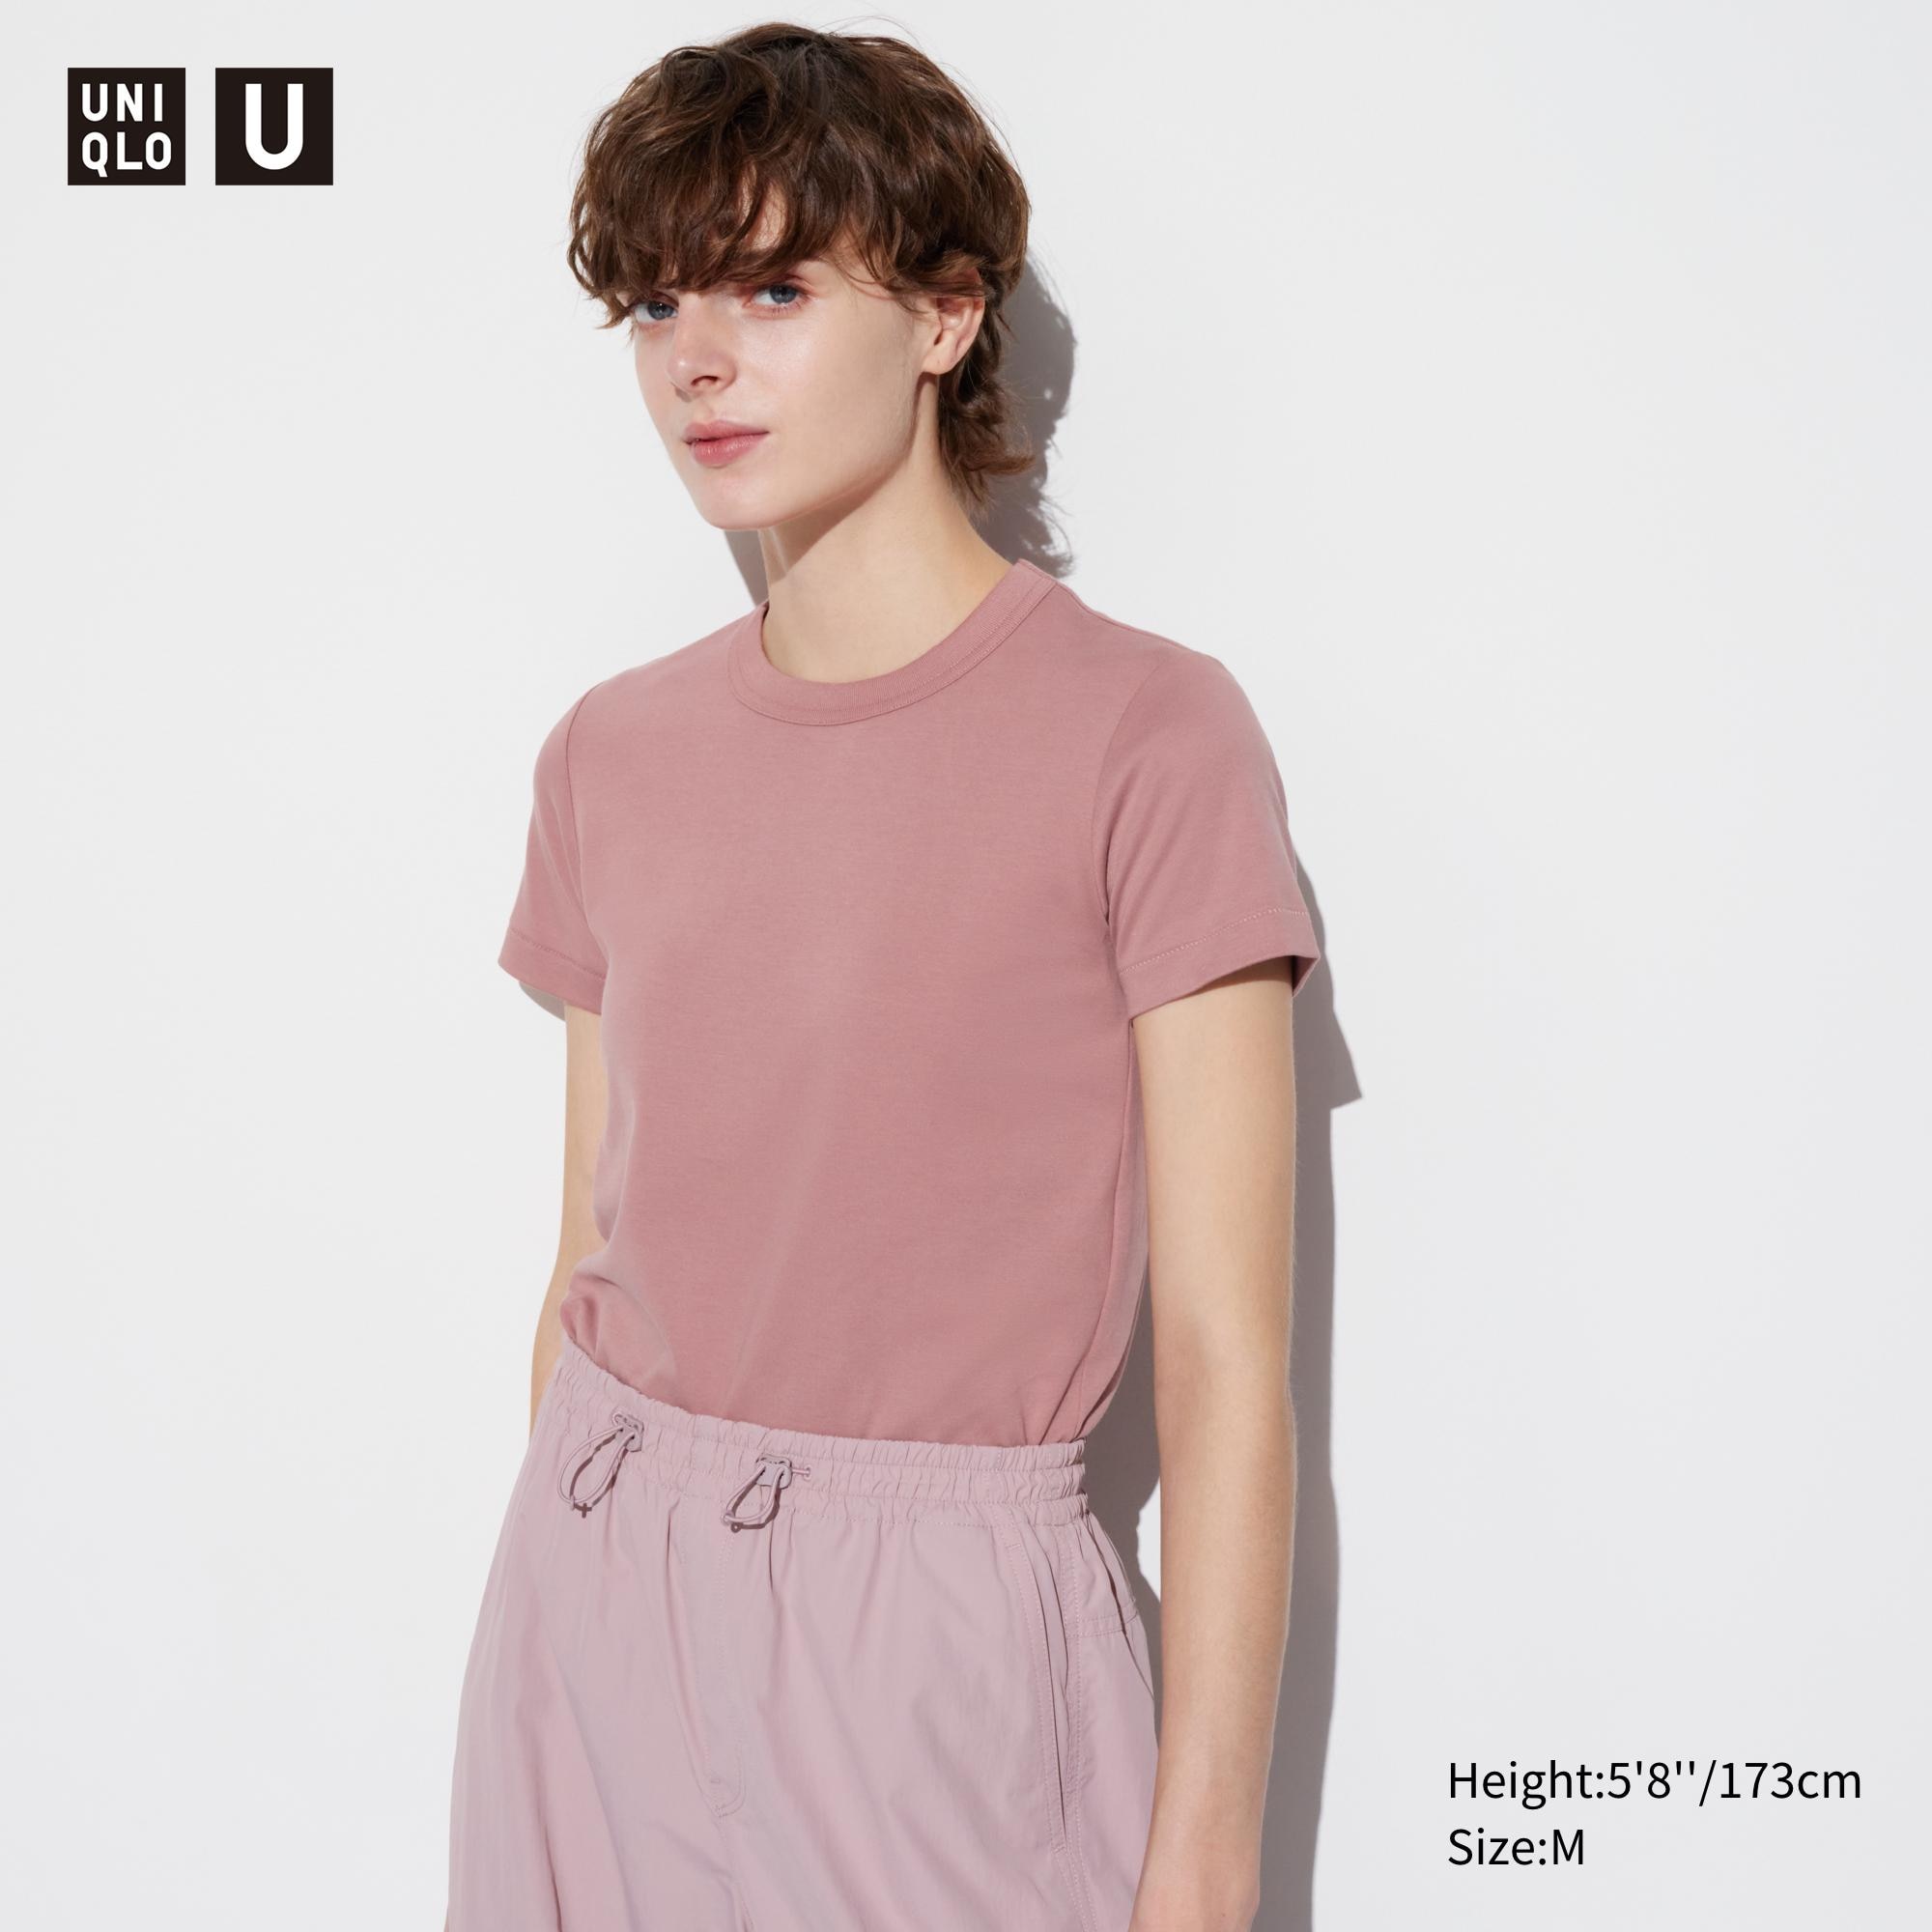 Uniqlo U Crew Neck Short Sleeve TShirt Womens Fashion Tops Shirts on  Carousell